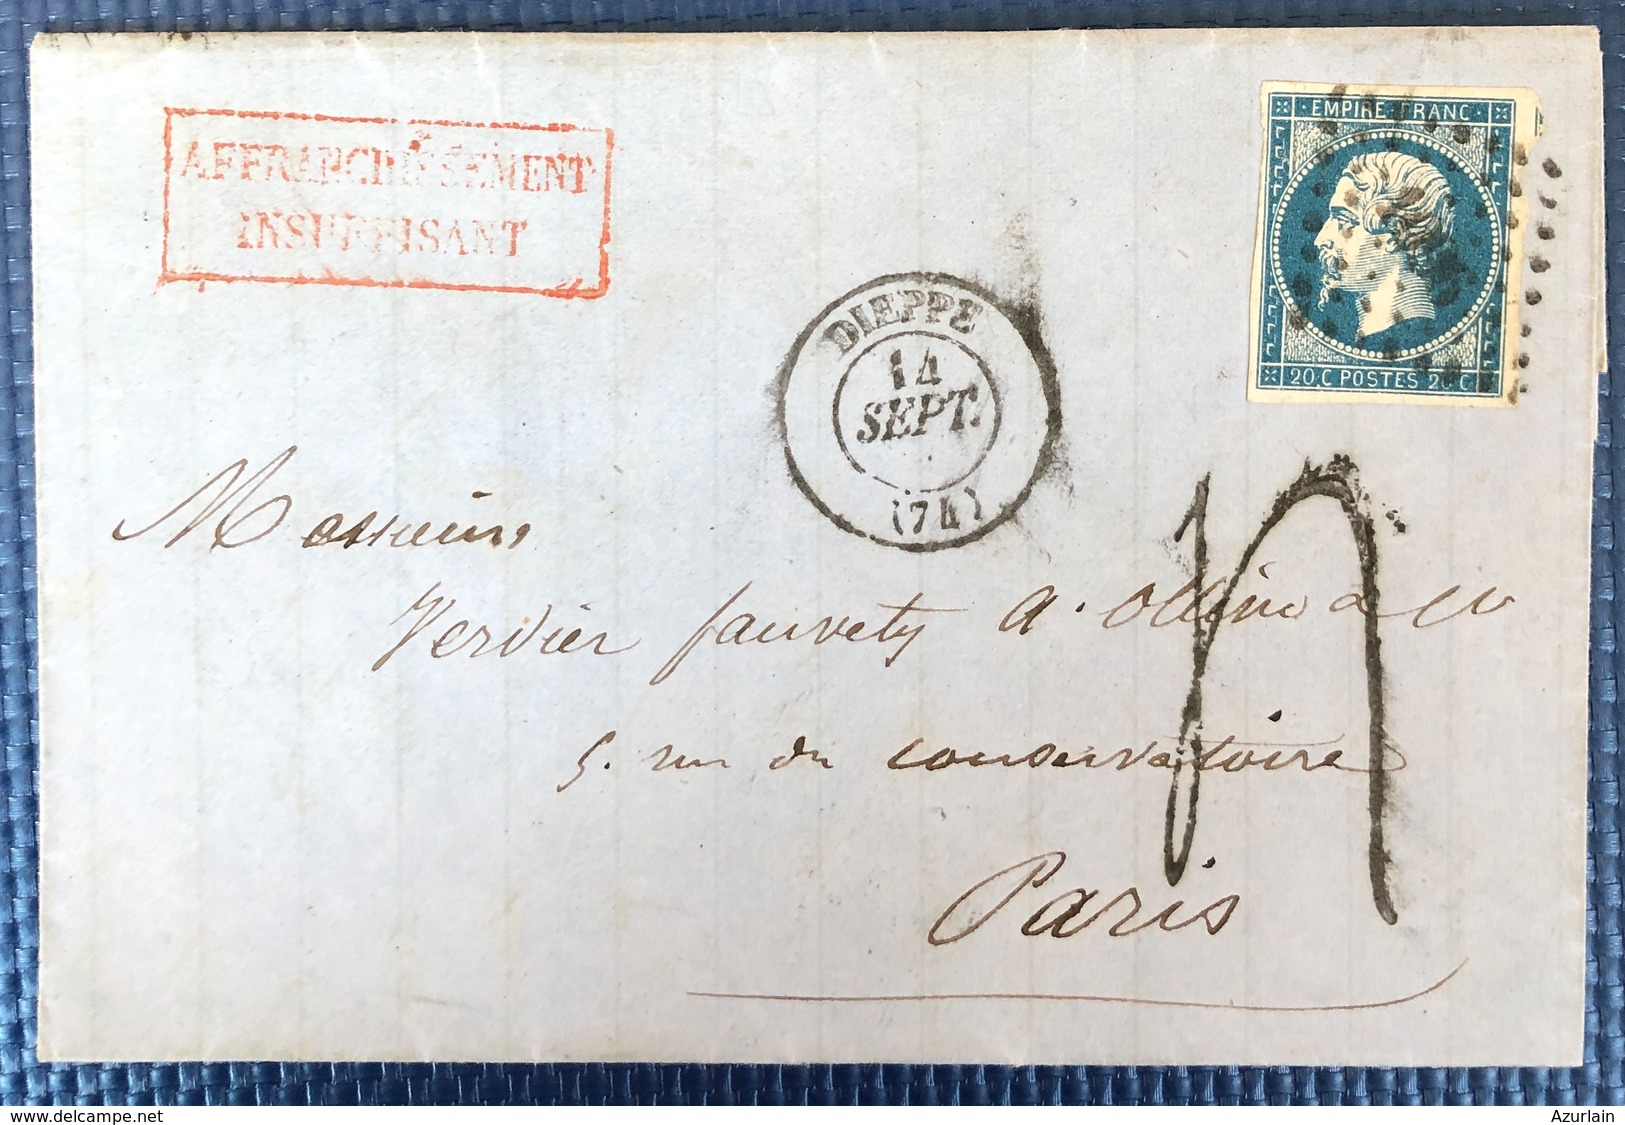 1839 1900 lot de 32 lettres DIEPPE Seine Inferieur